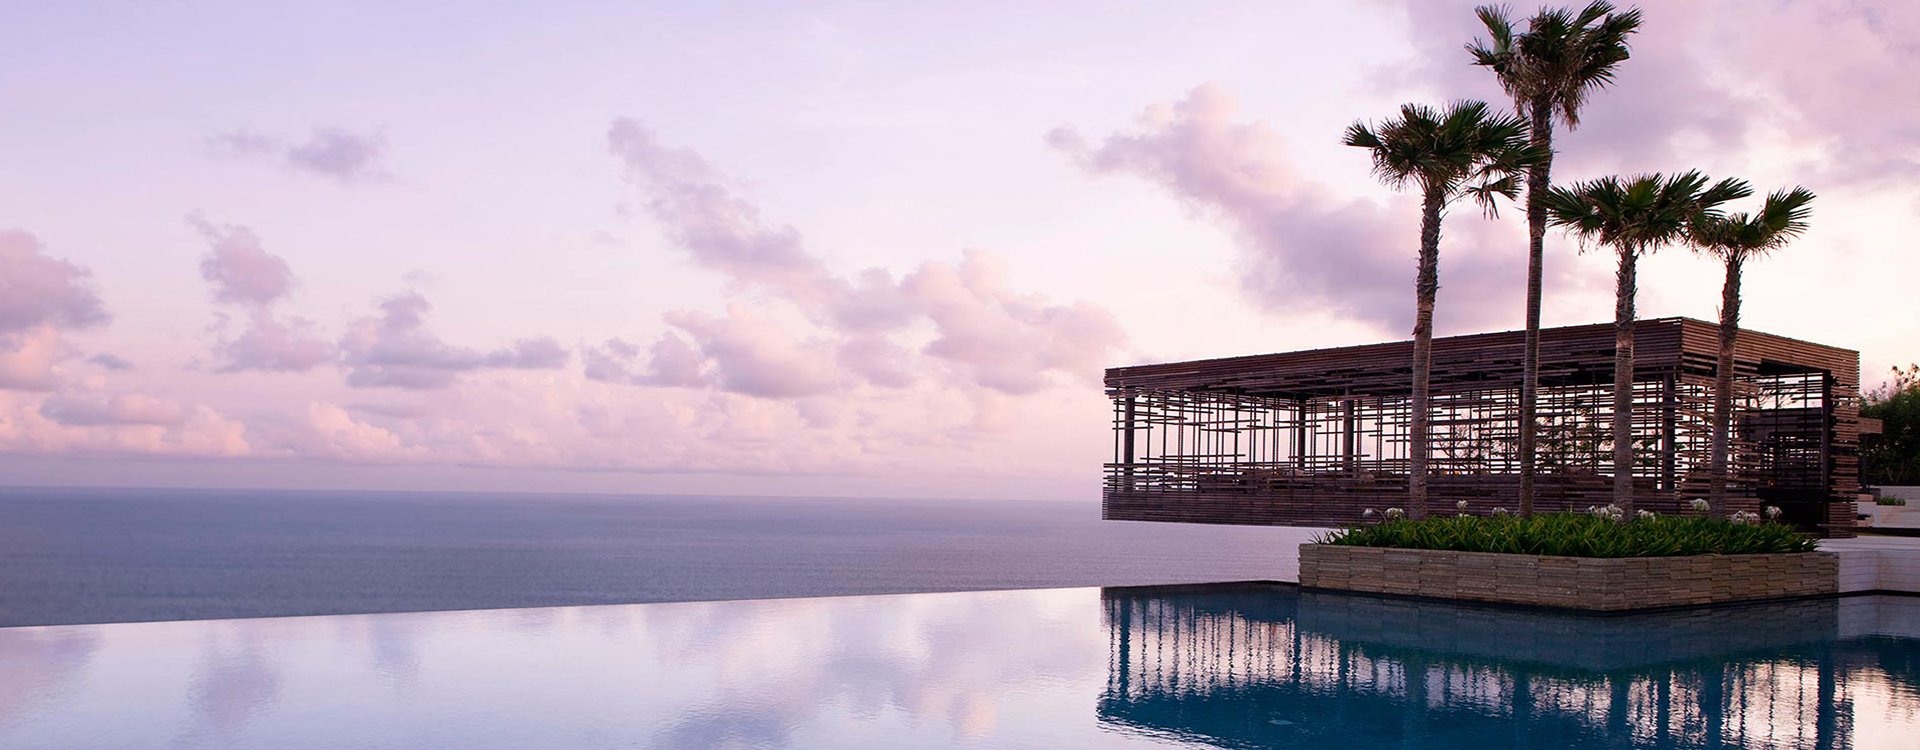 Alila Villas Uluwatu Bali_Pool with Ocean View